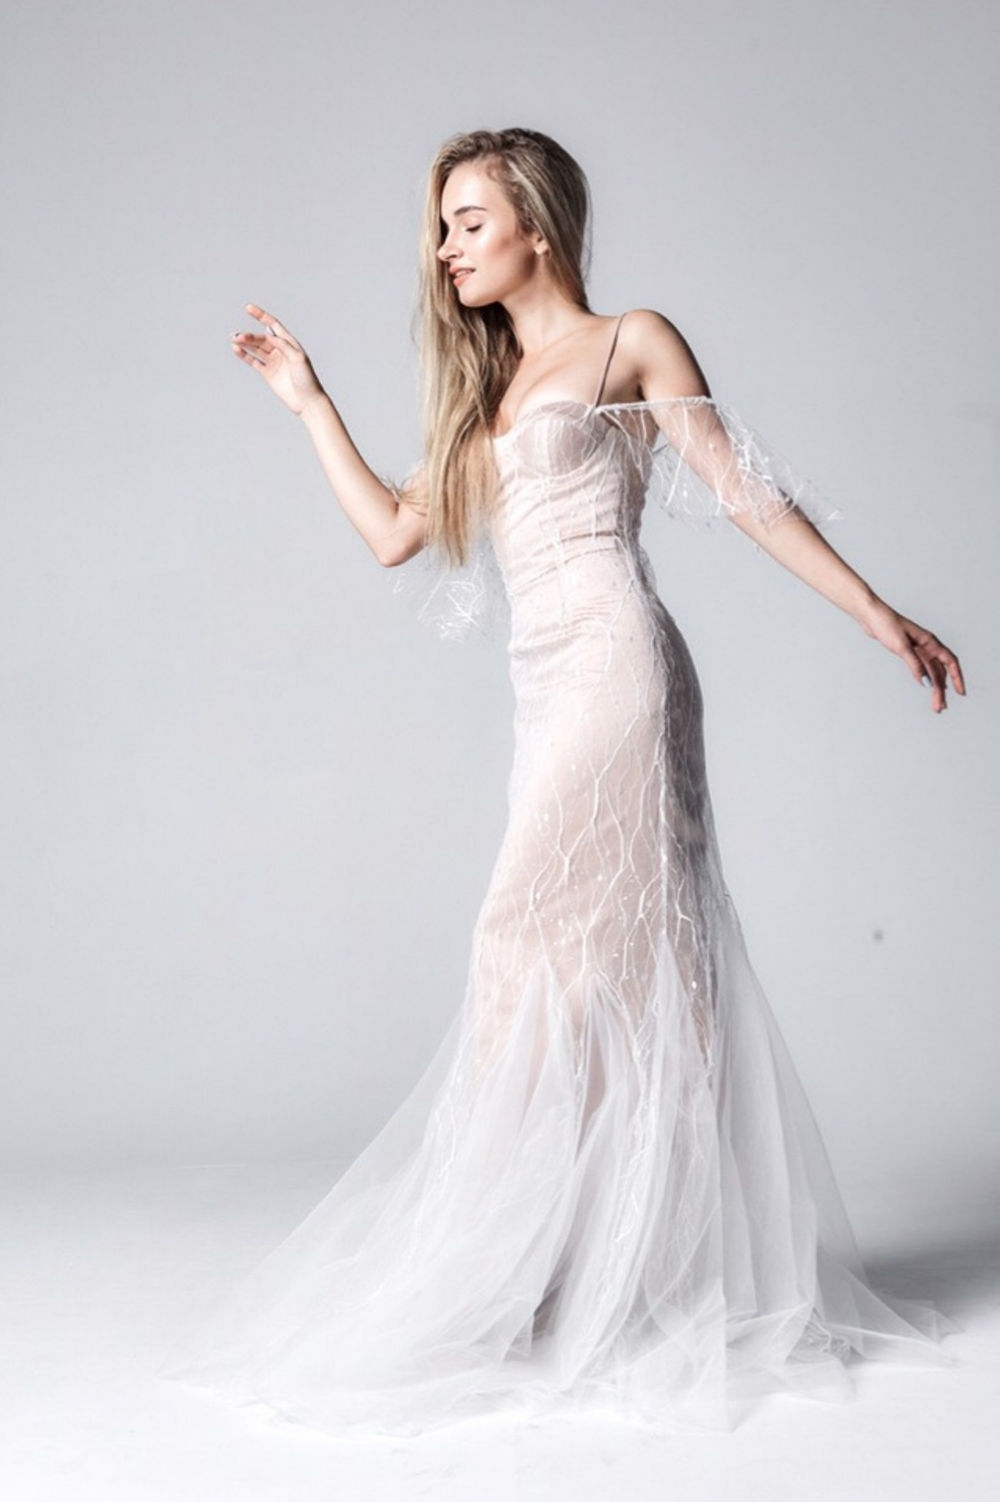 Свадебное платье по фигуре из плотного атласа с декоративной сеткой.
В наличии в размере 38-42
Возможен индивидуальный пошив по вашим меркам и в другом цвете